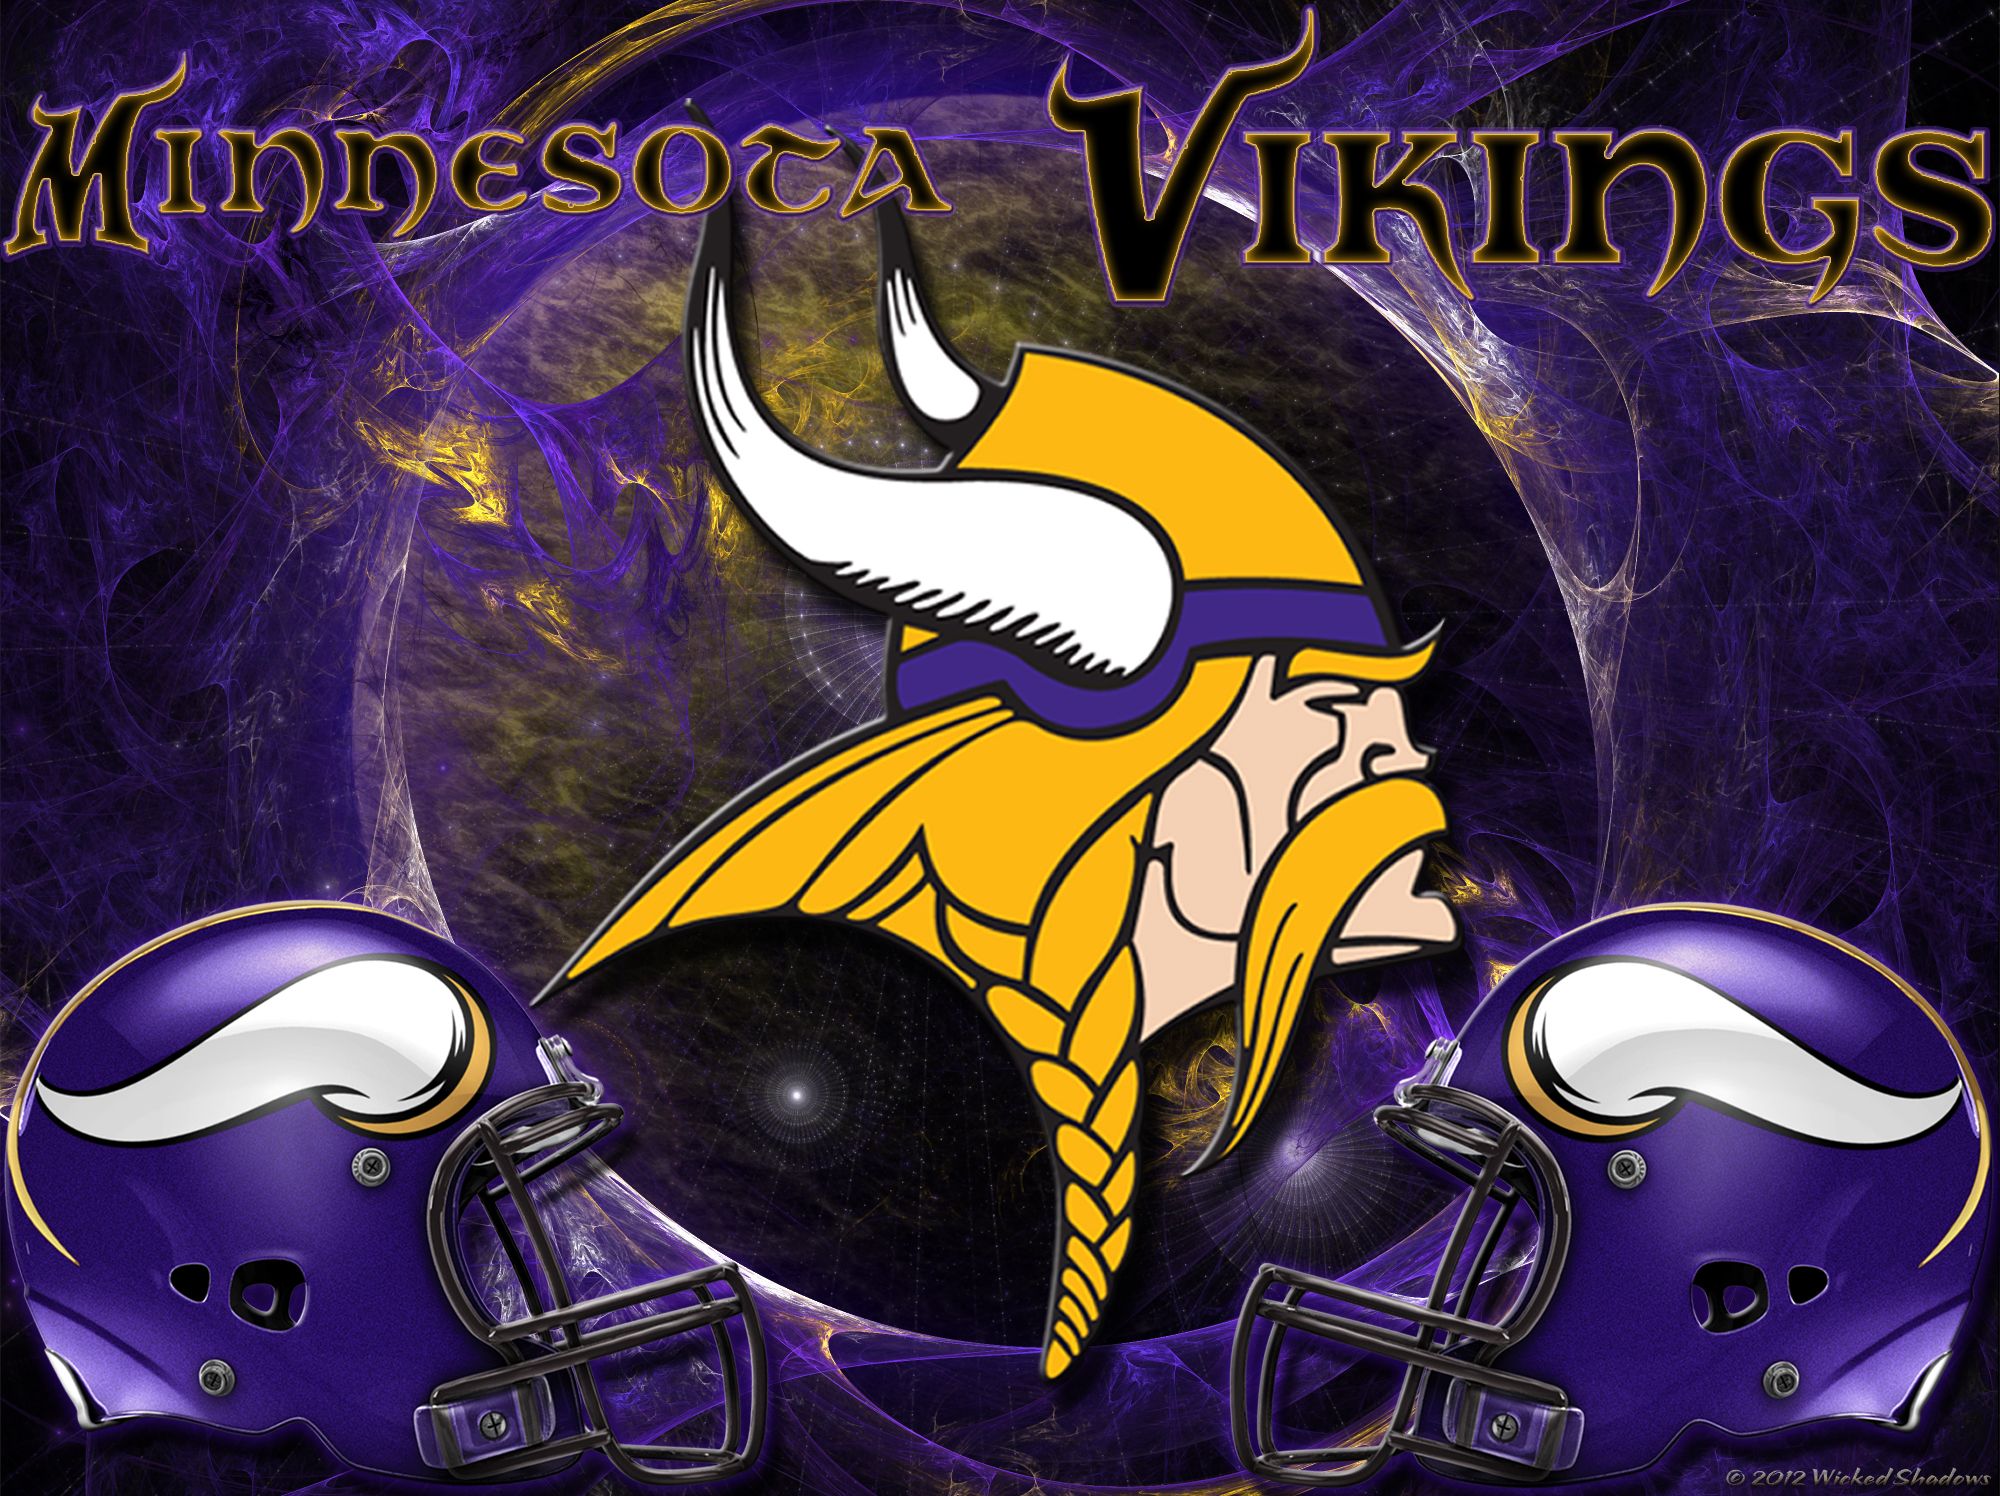 49+] Vikings NFL Wallpapers